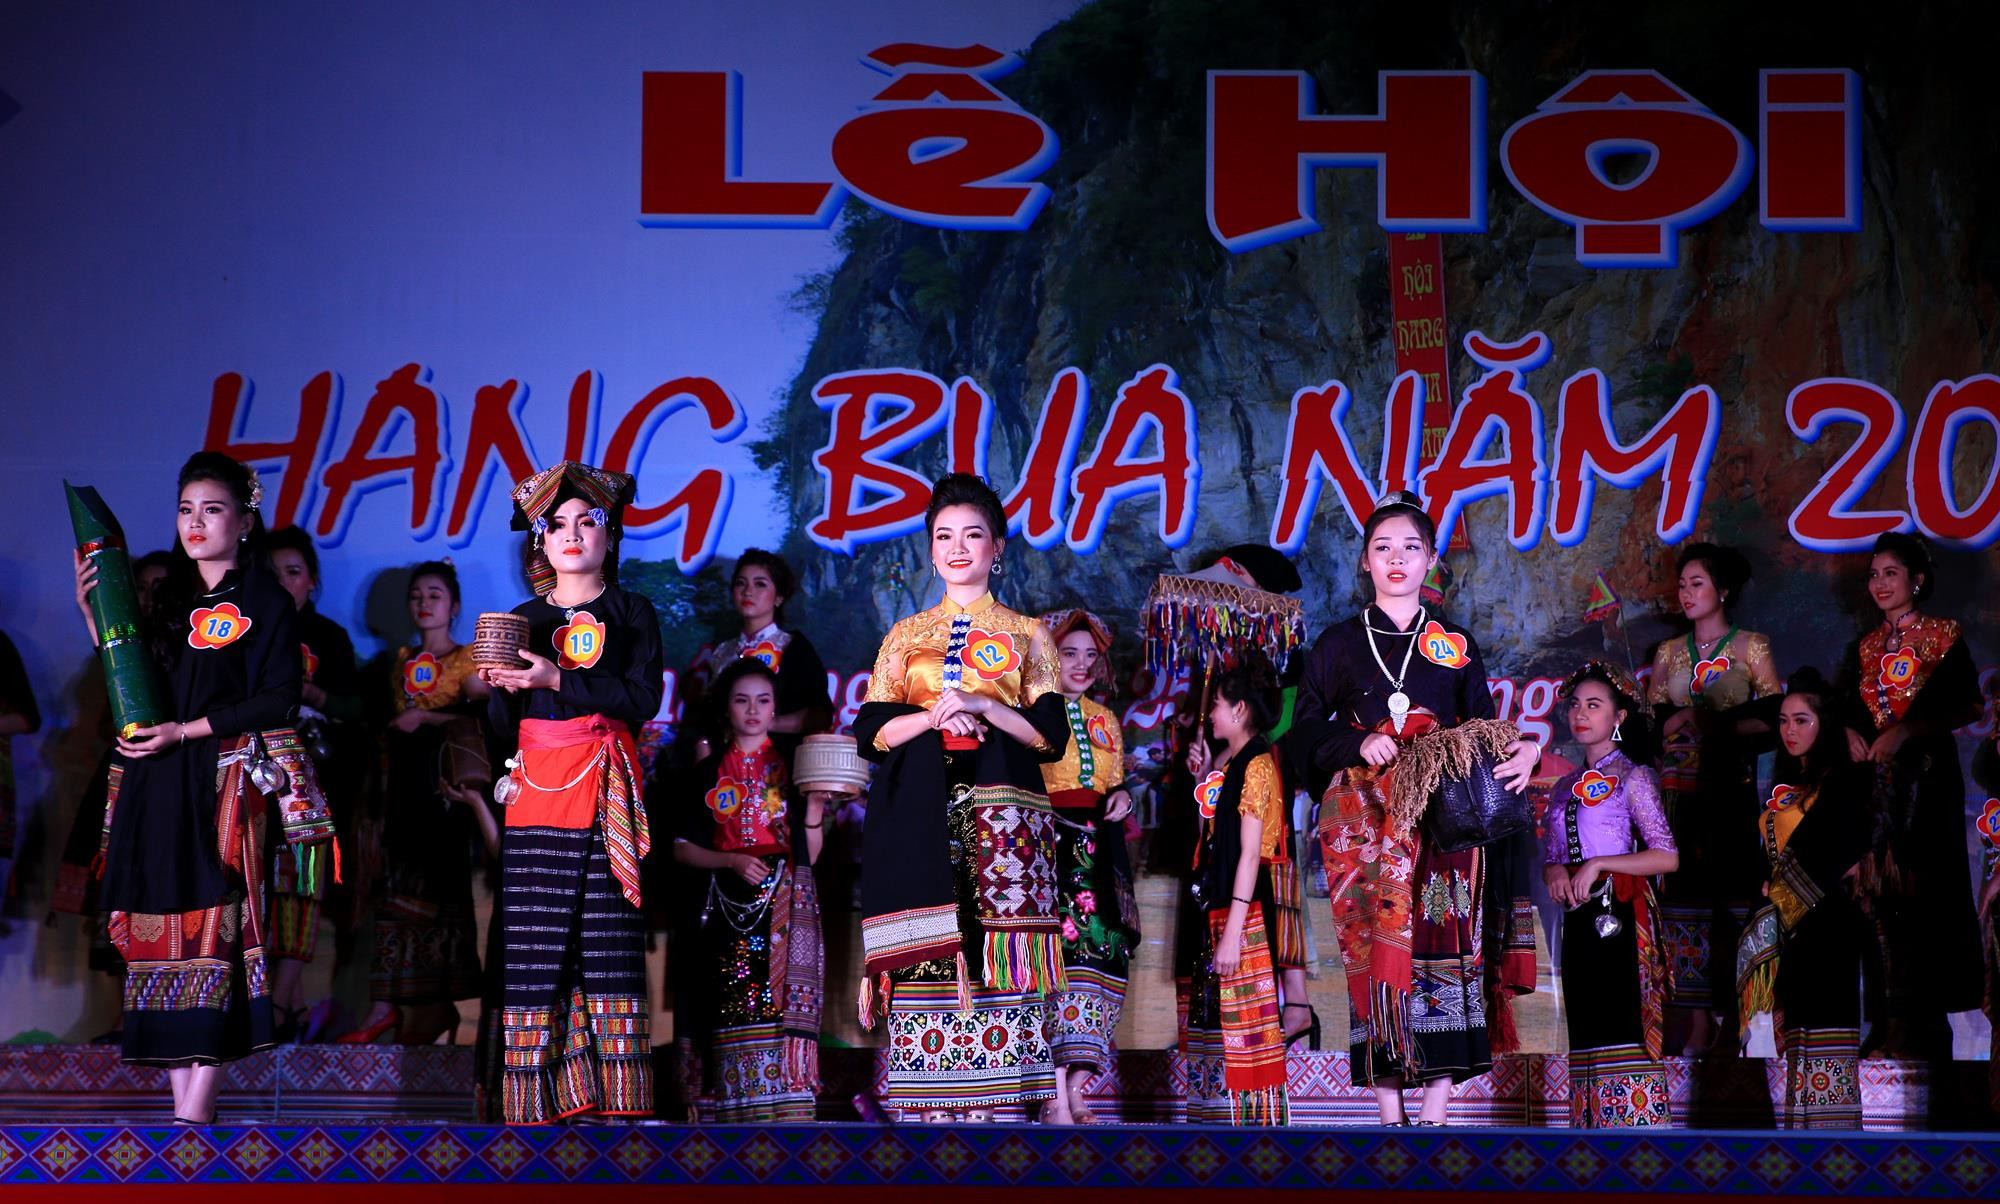 Trình diễn trang phục dân tộc là phần thứ hai của đêm thi người đẹp trong đó trang phục của cộng đồng người Thái huyện Quỳ châu đã xuất hiện nhiều lần nhất tại đêm thi 